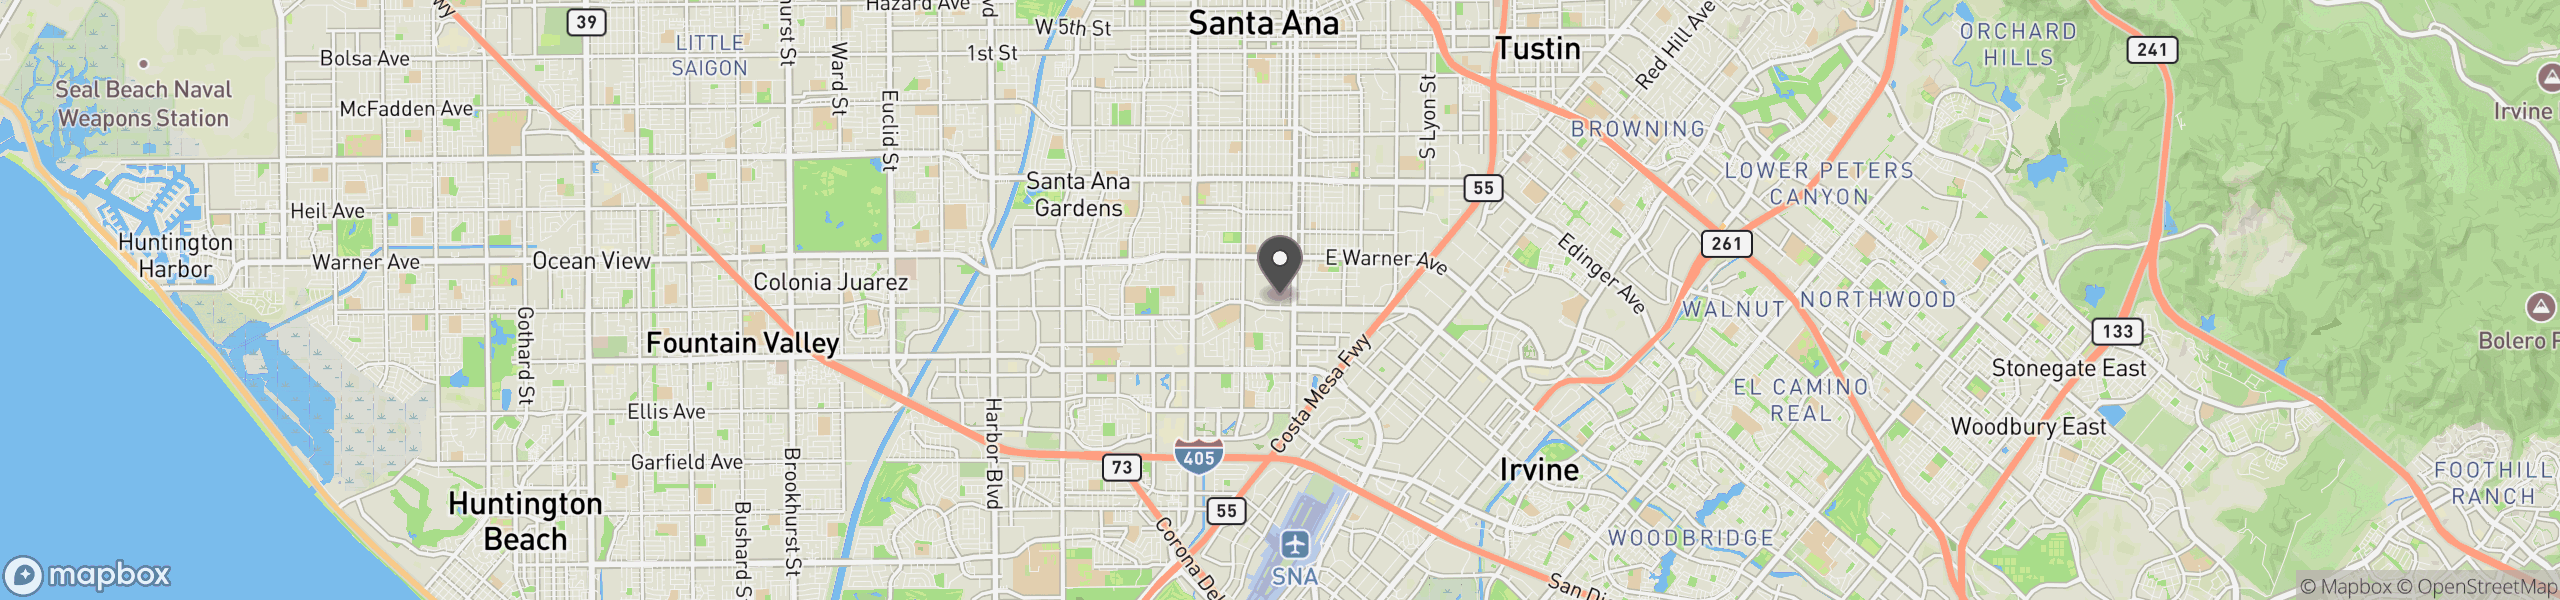 Santa Ana, CA 92707